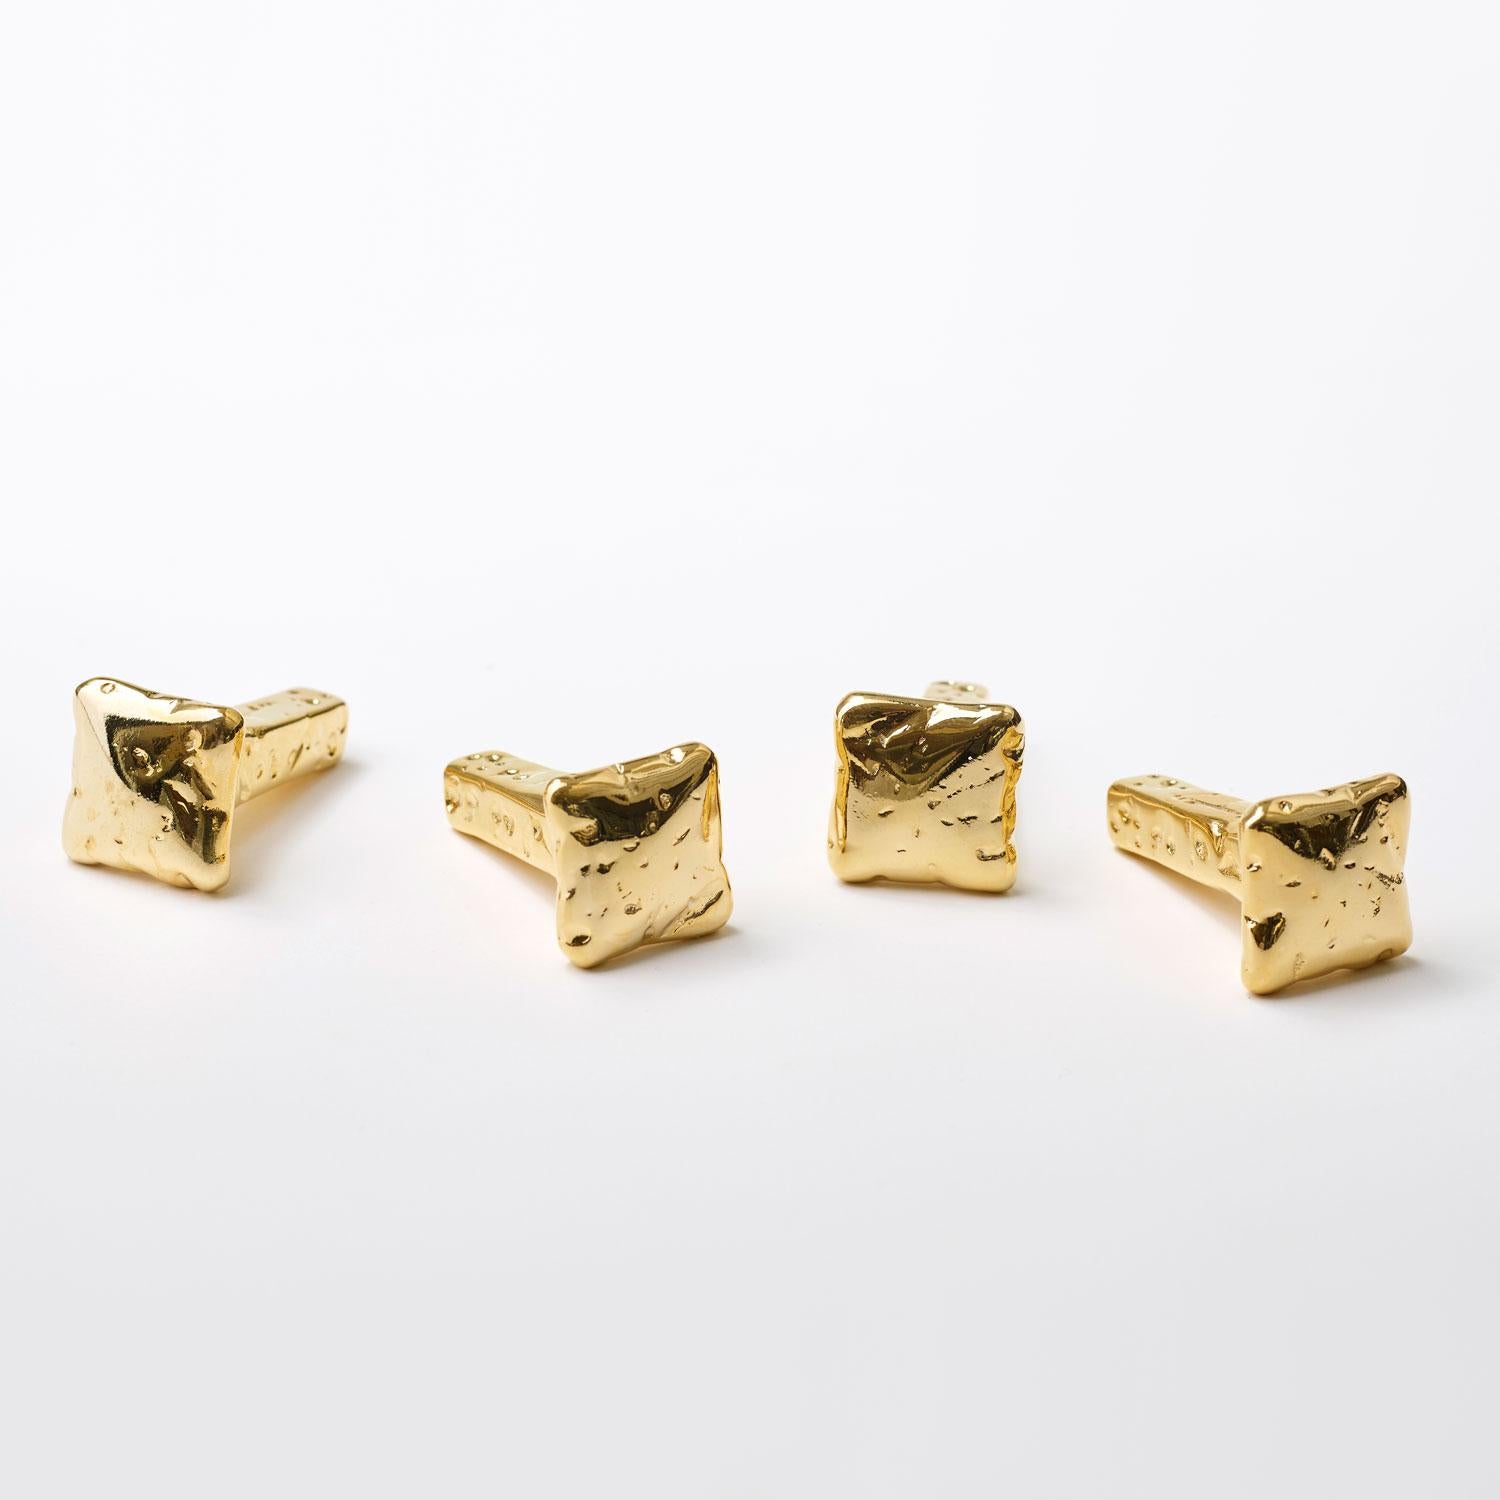 For Sale: Gold (24K Gold) Opinion Ciatti Chiodo Schiaccia Chiodo Set of 12 Clothes Hangers 2